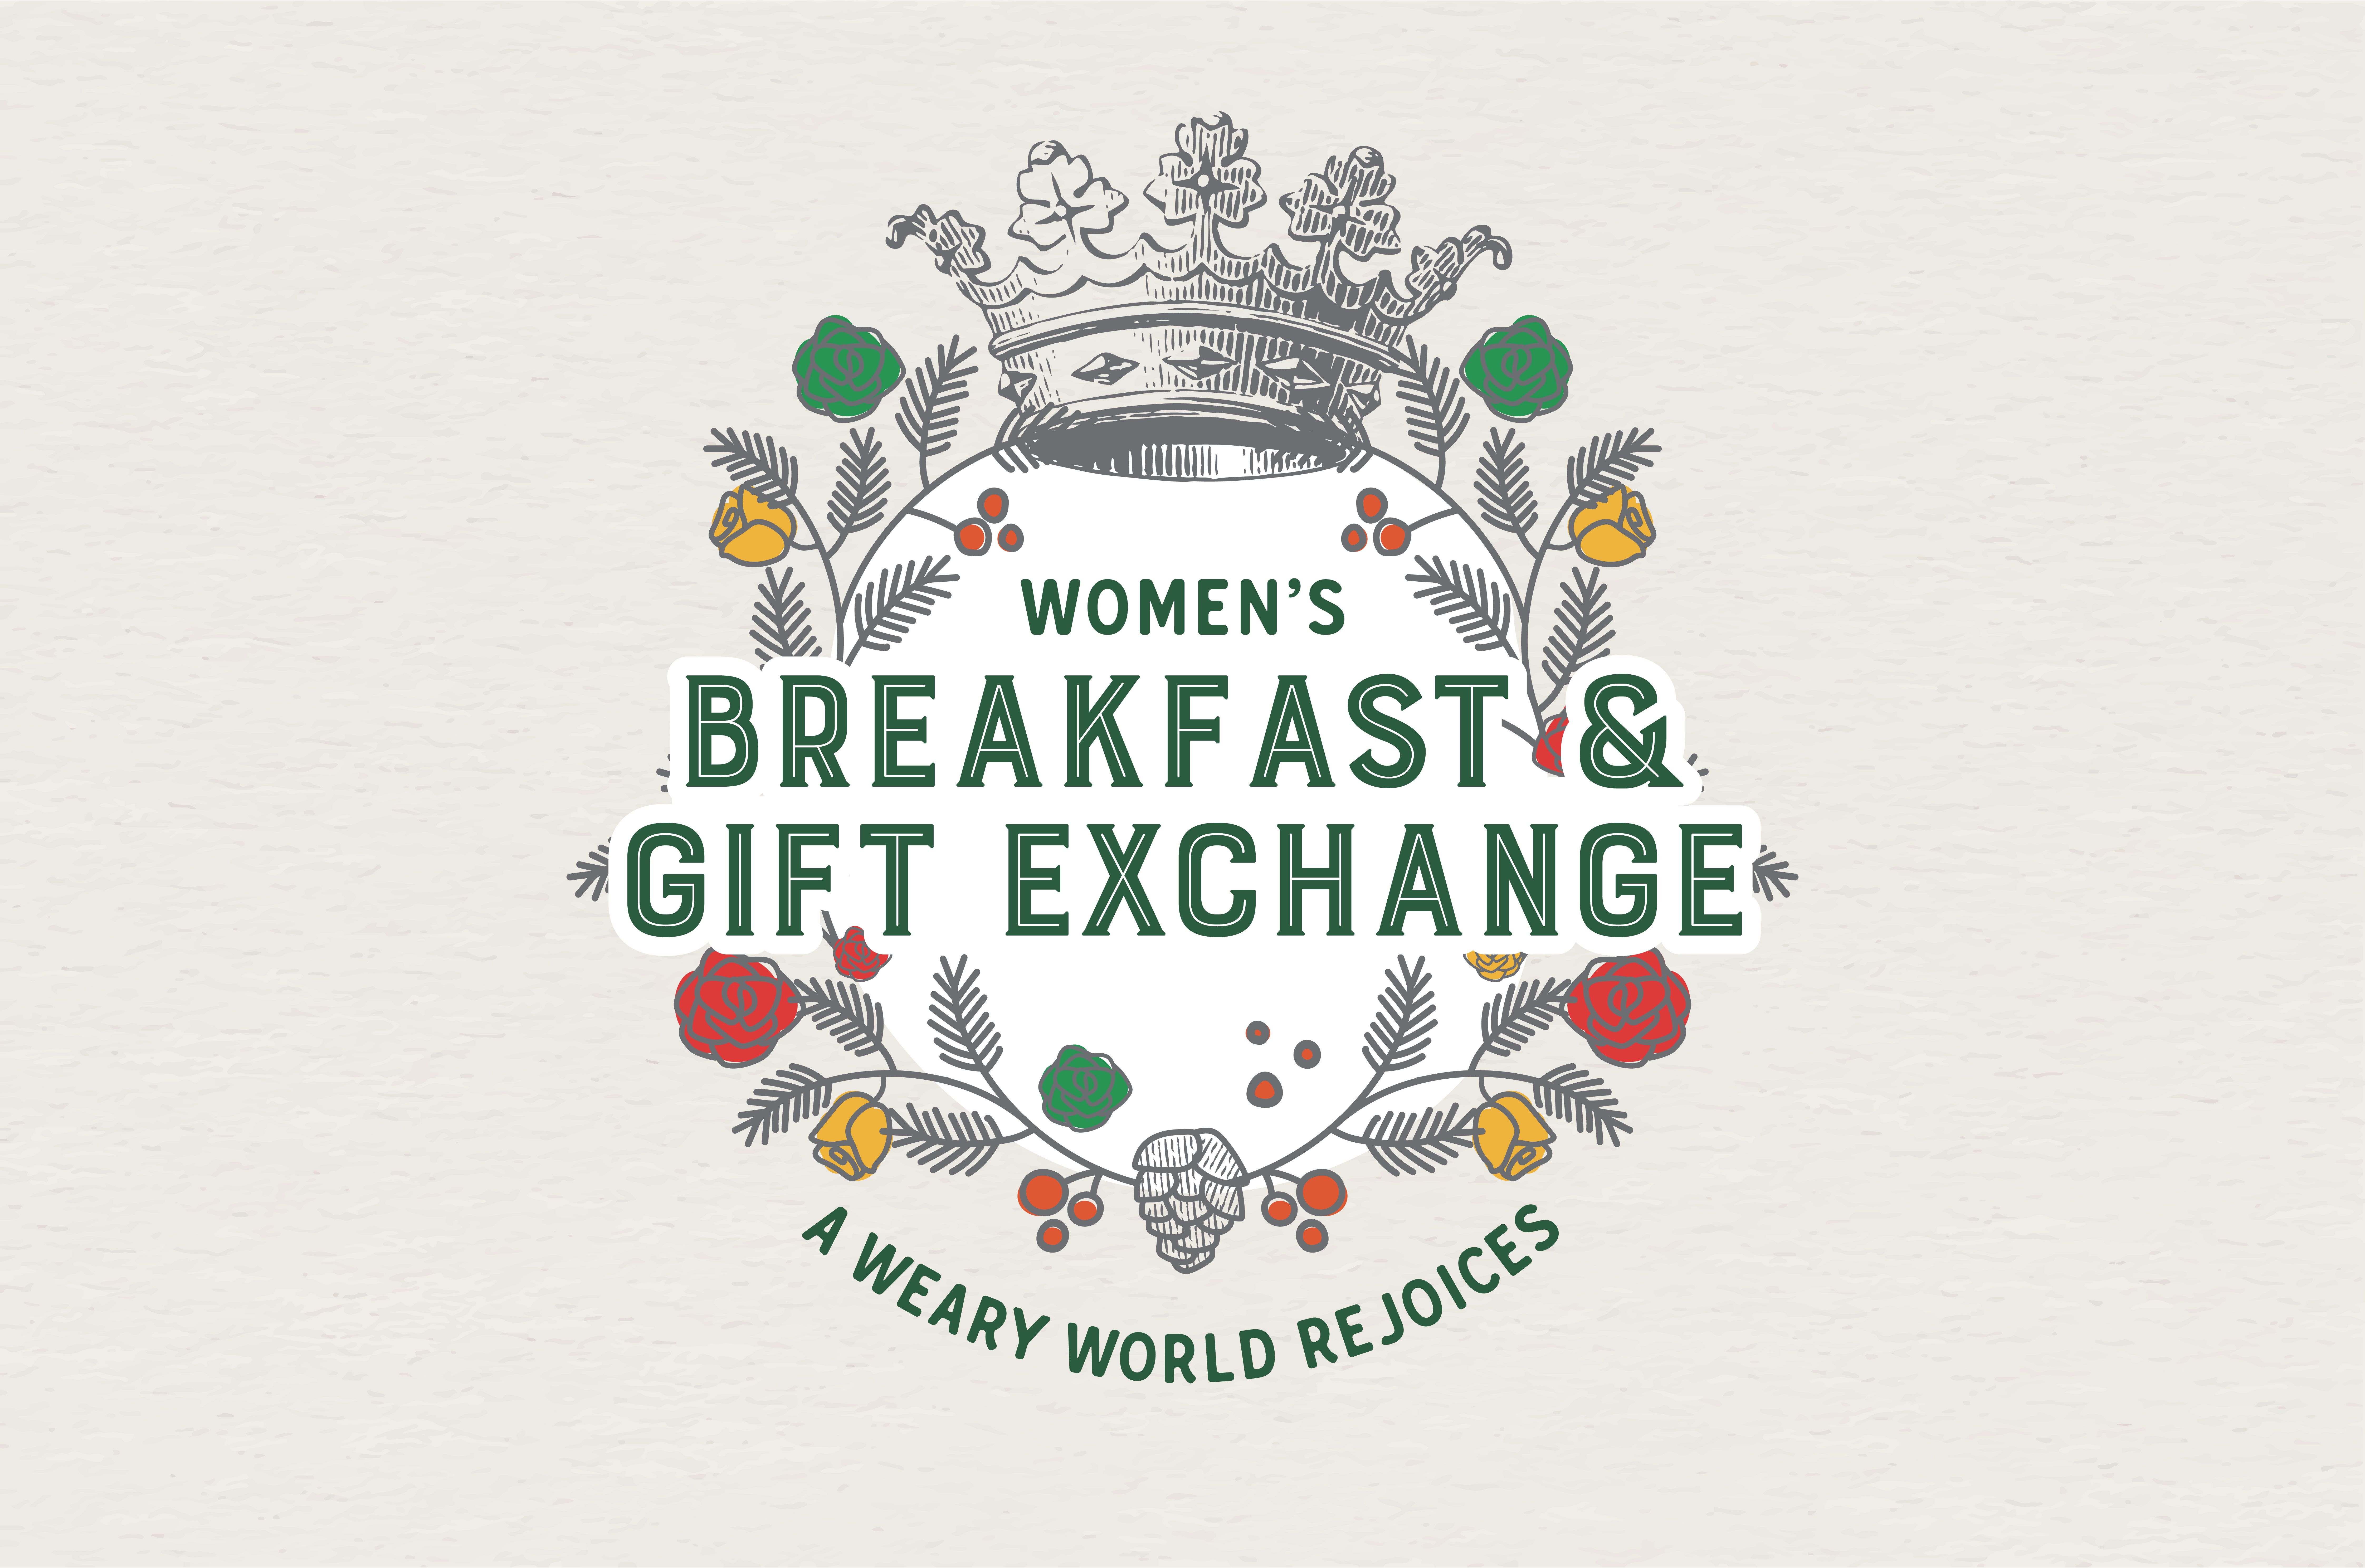 Women's Gift Exchange